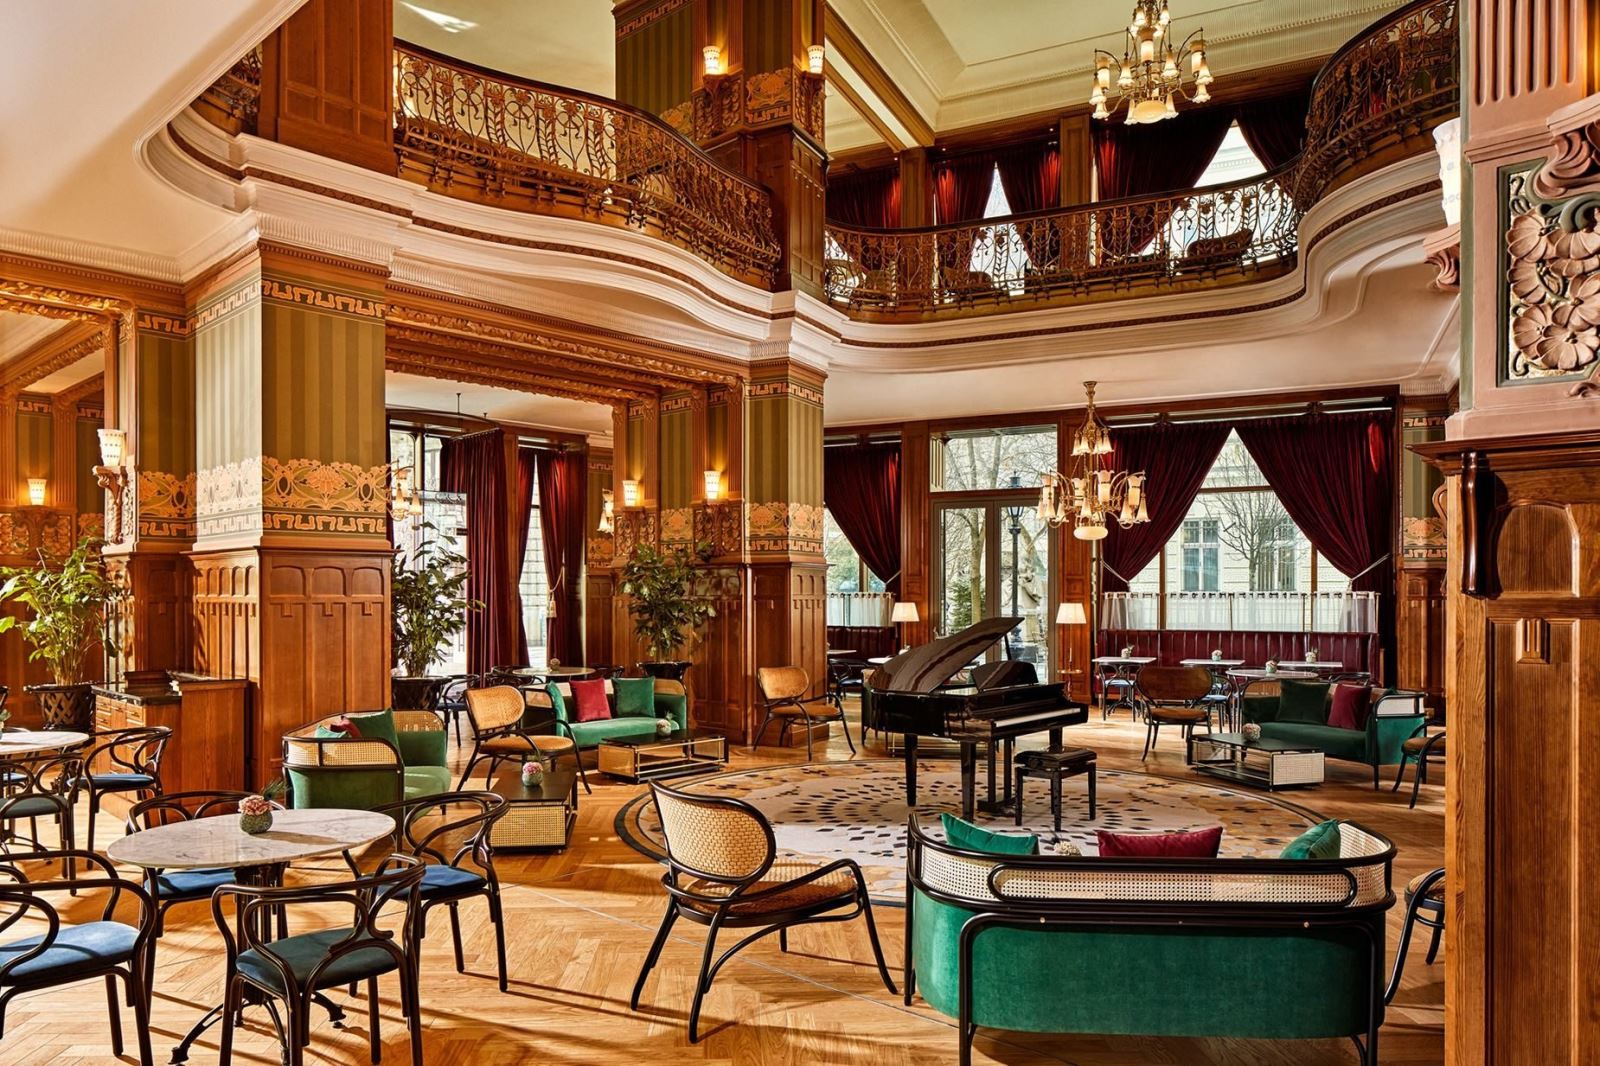 Khám phá bên trong khách sạn 5 sao được chuyển đổi từ cung điện 120 năm tuổi - Ảnh 3.